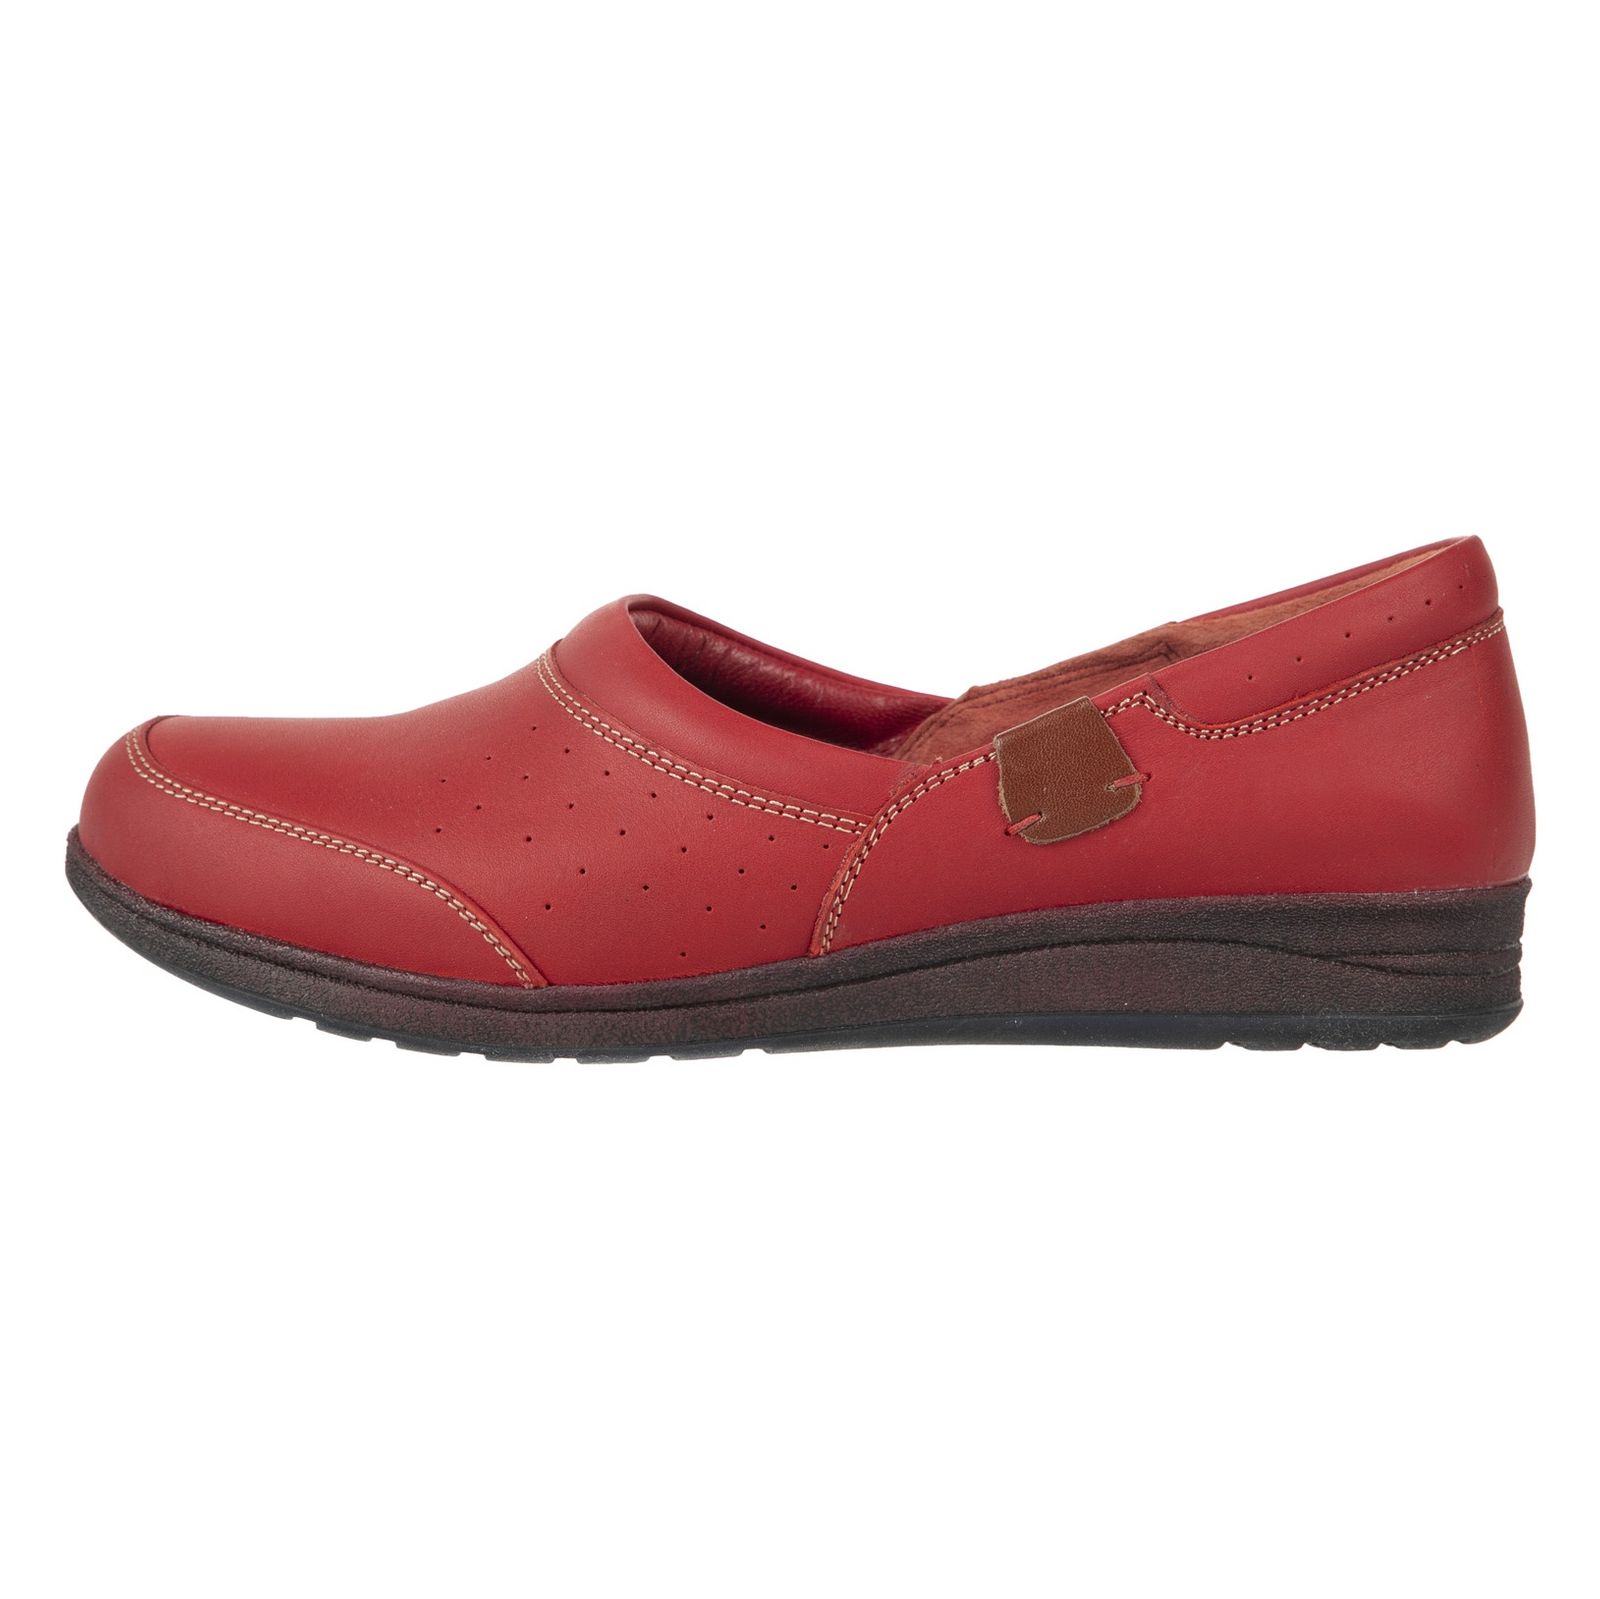 کفش روزمره زنانه ریمکس مدل 5181B500-102 - قرمز - 3